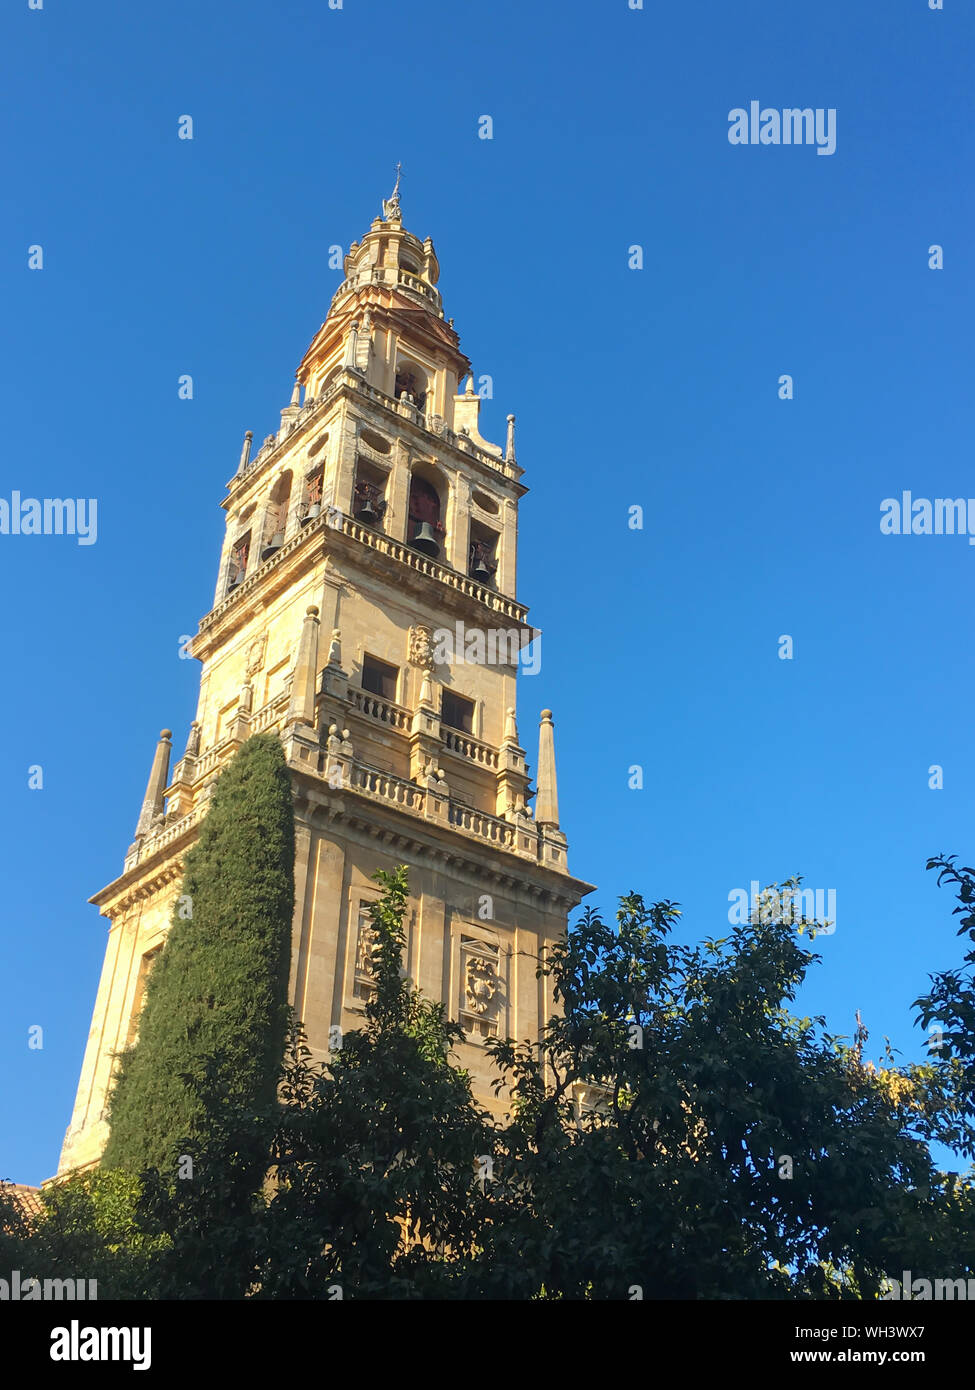 Clocher de la cathédrale Grande Mosquée de Cordoue, Andalousie, Espagne Banque D'Images